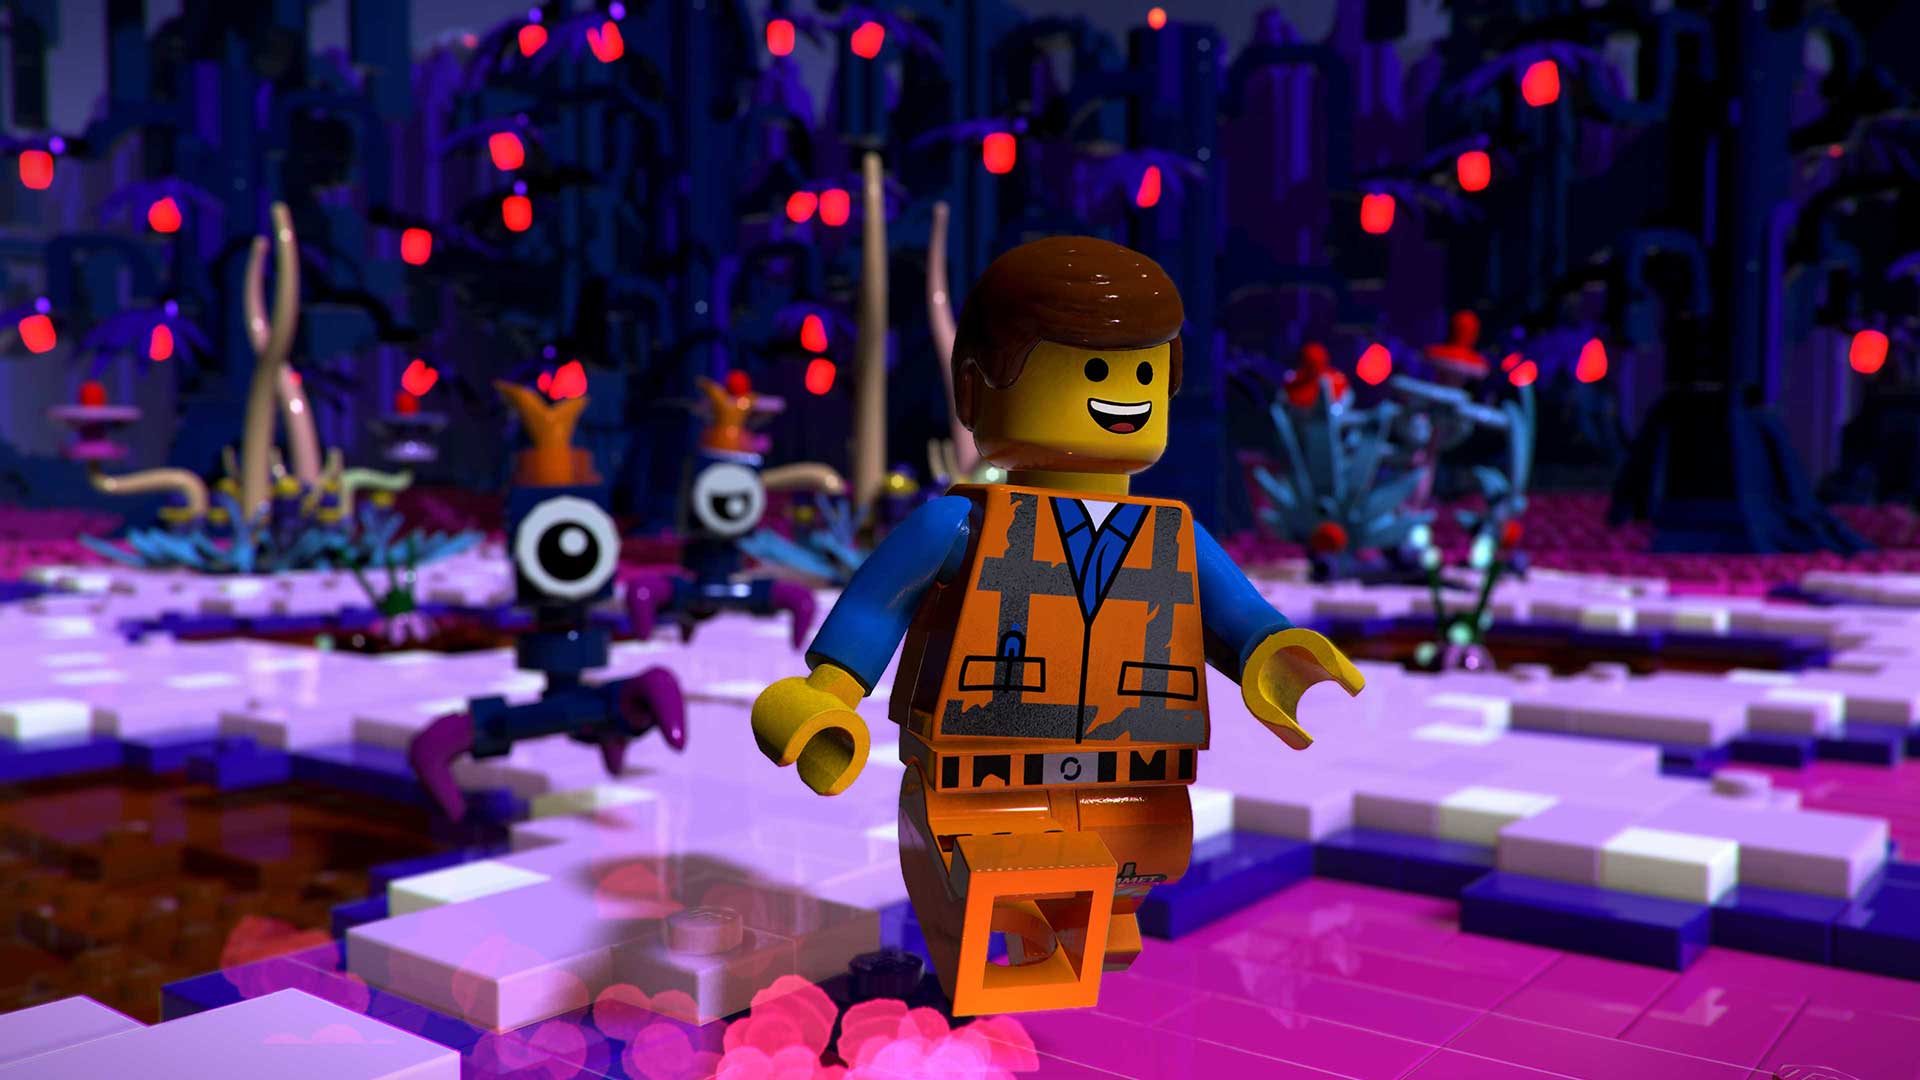 Jogo Uma Aventura Lego 2 Videogame - PS4 - EletroYou - EletroYou